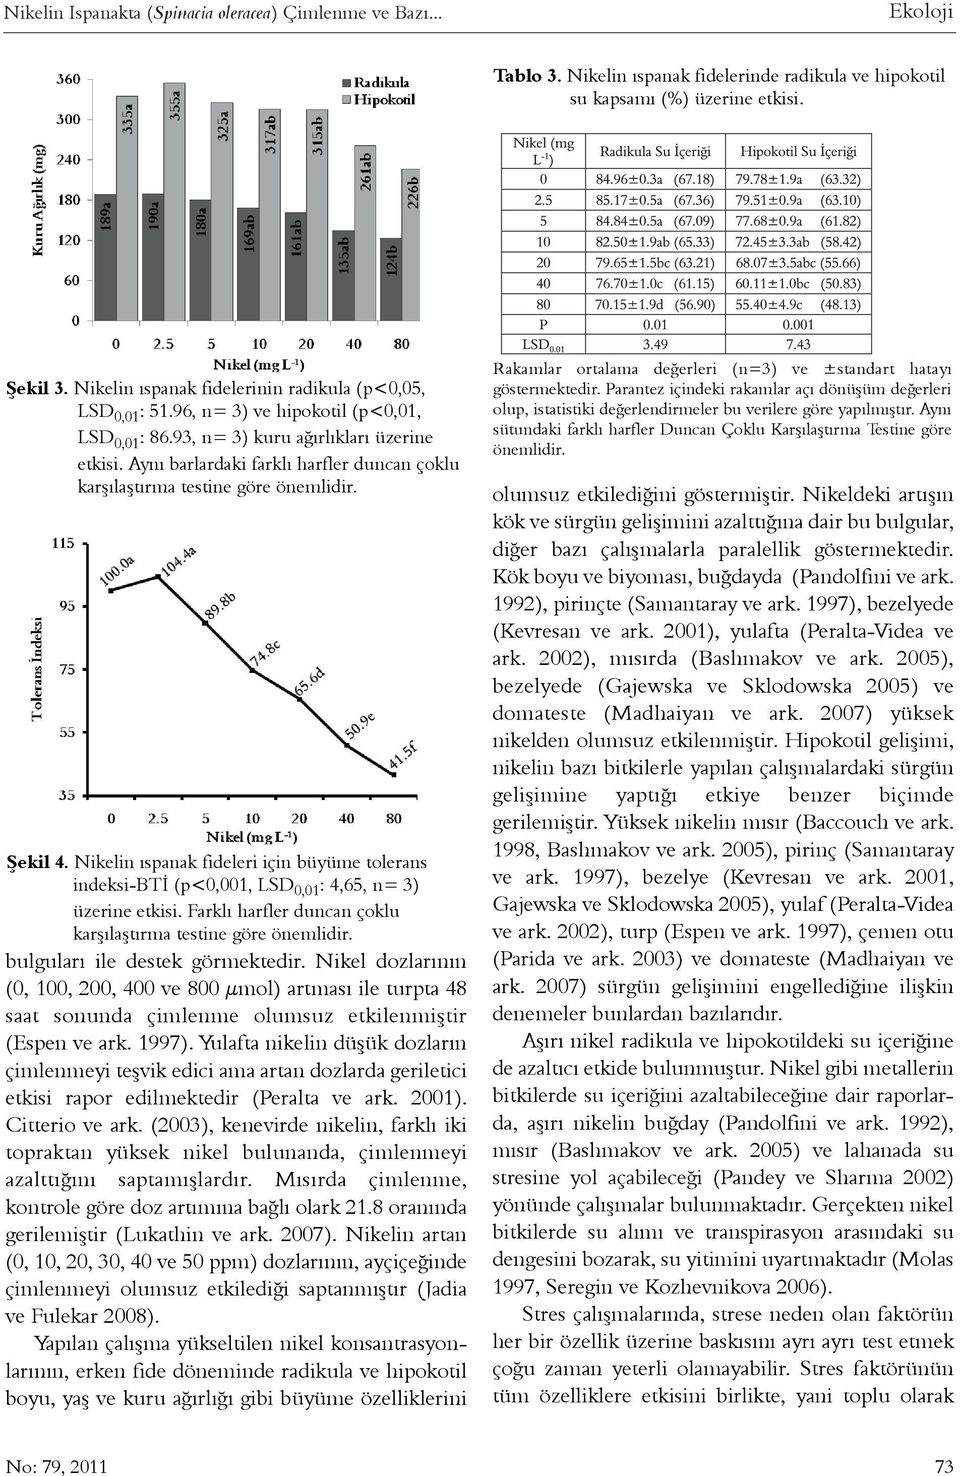 Ayný barlardaki farklý harfler duncan çoklu karþýlaþtýrma testine göre önemlidir. Þekil 4. Nikelin ýspanak fideleri için büyüme tolerans indeksi-btý (p<0,001, LSD 0,01 : 4,65, n= 3) üzerine etkisi.